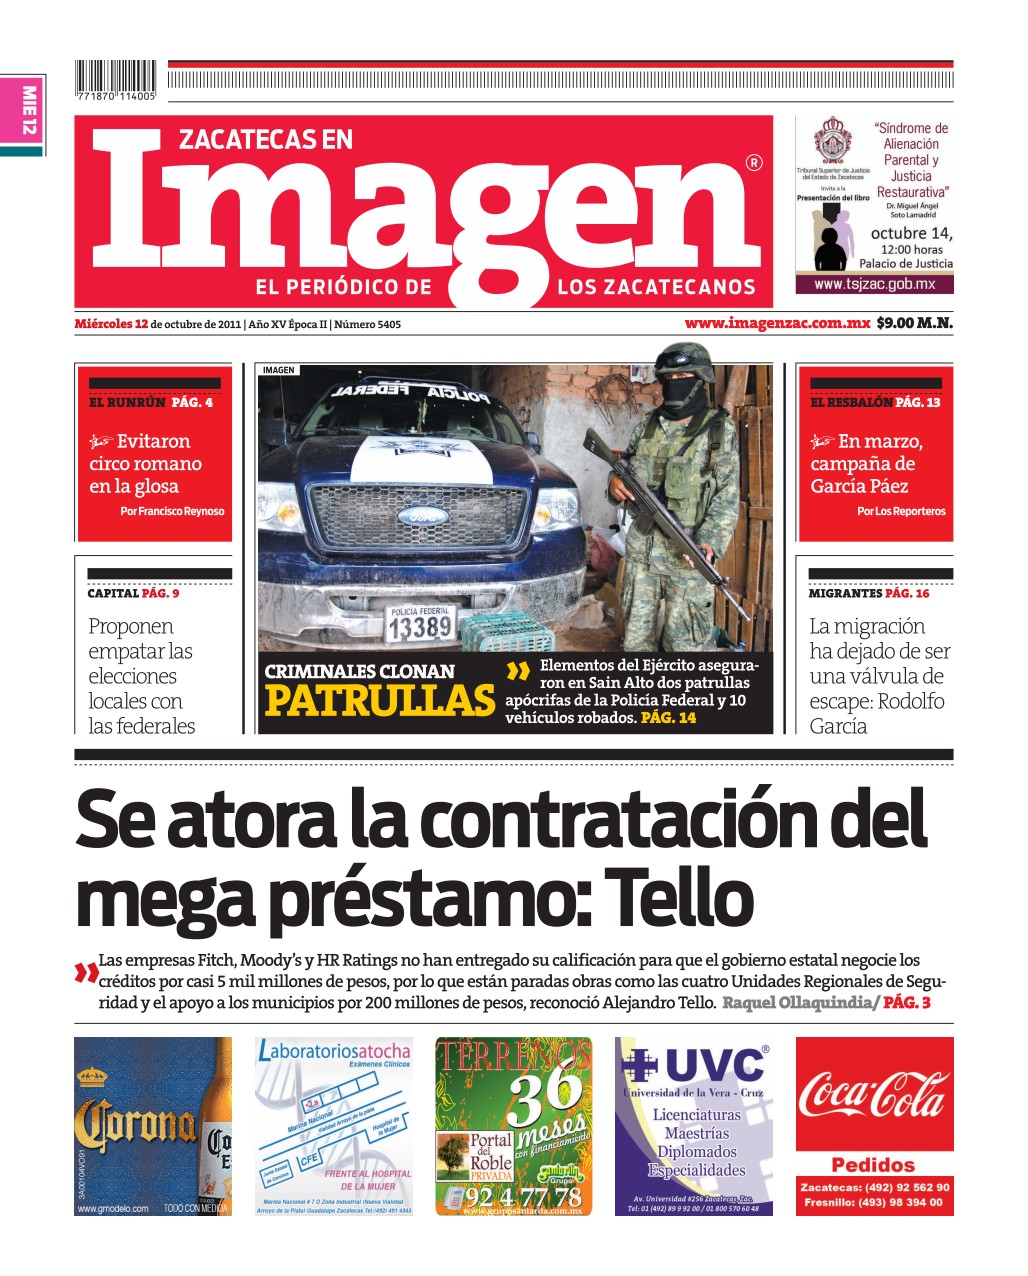 Imagen Zacatecas edición del 12 de Octubre 2011